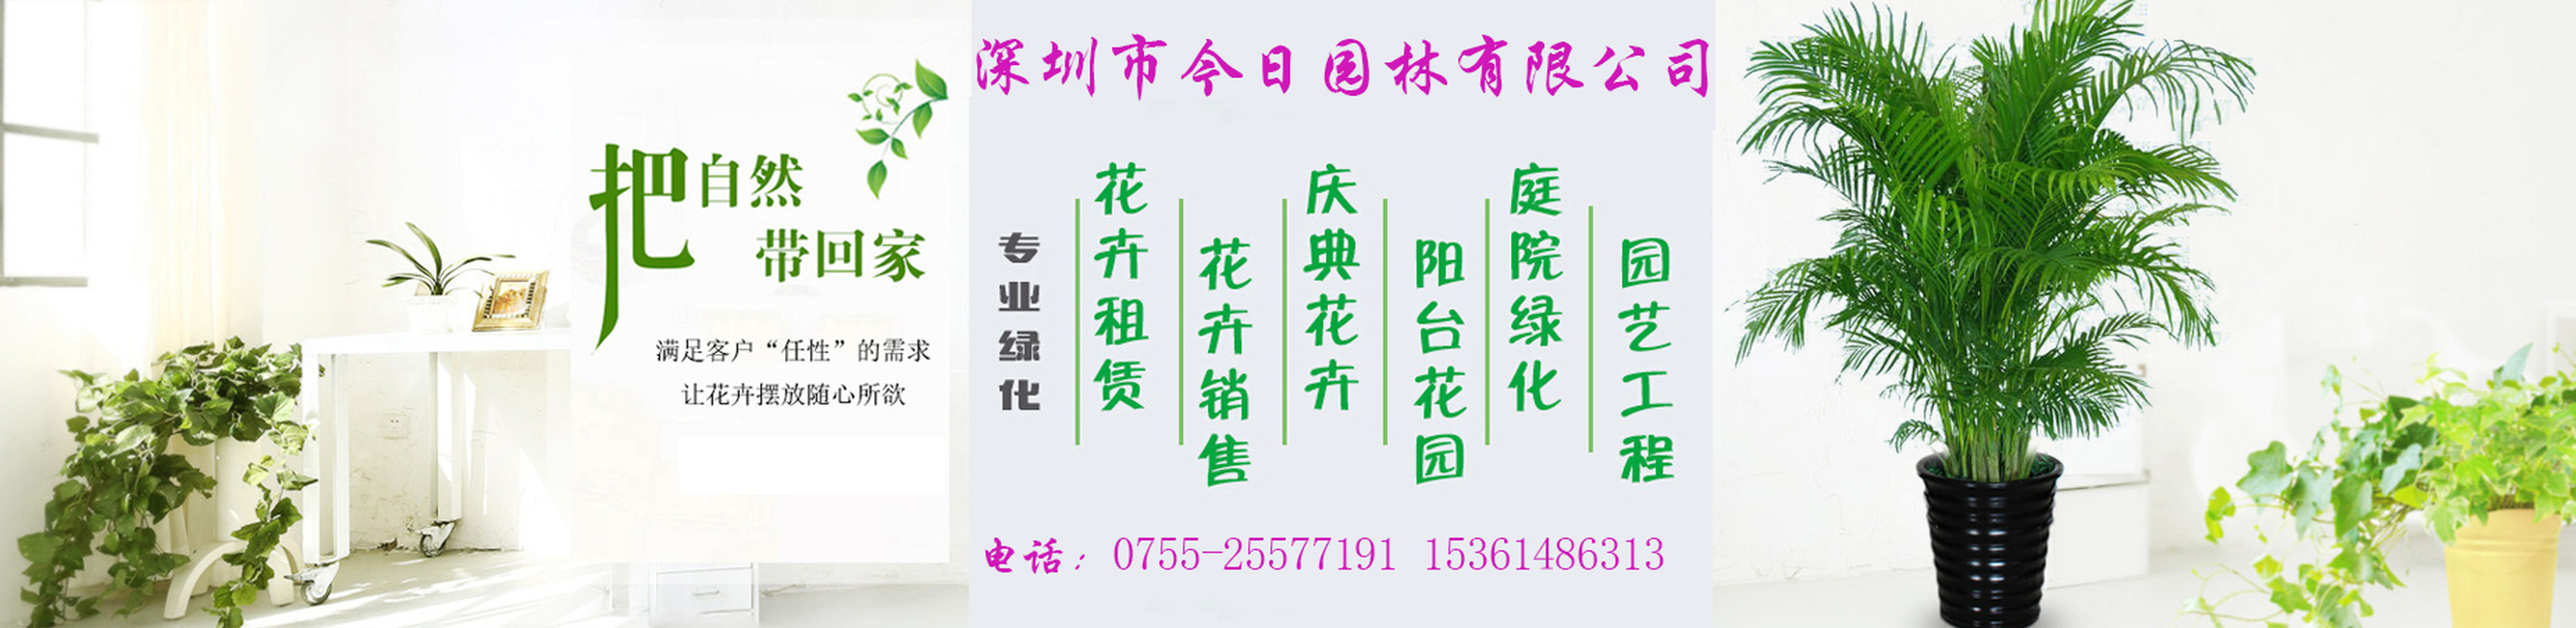 綠植租賃，找深圳市今日園林有限公司，電話：15361486313